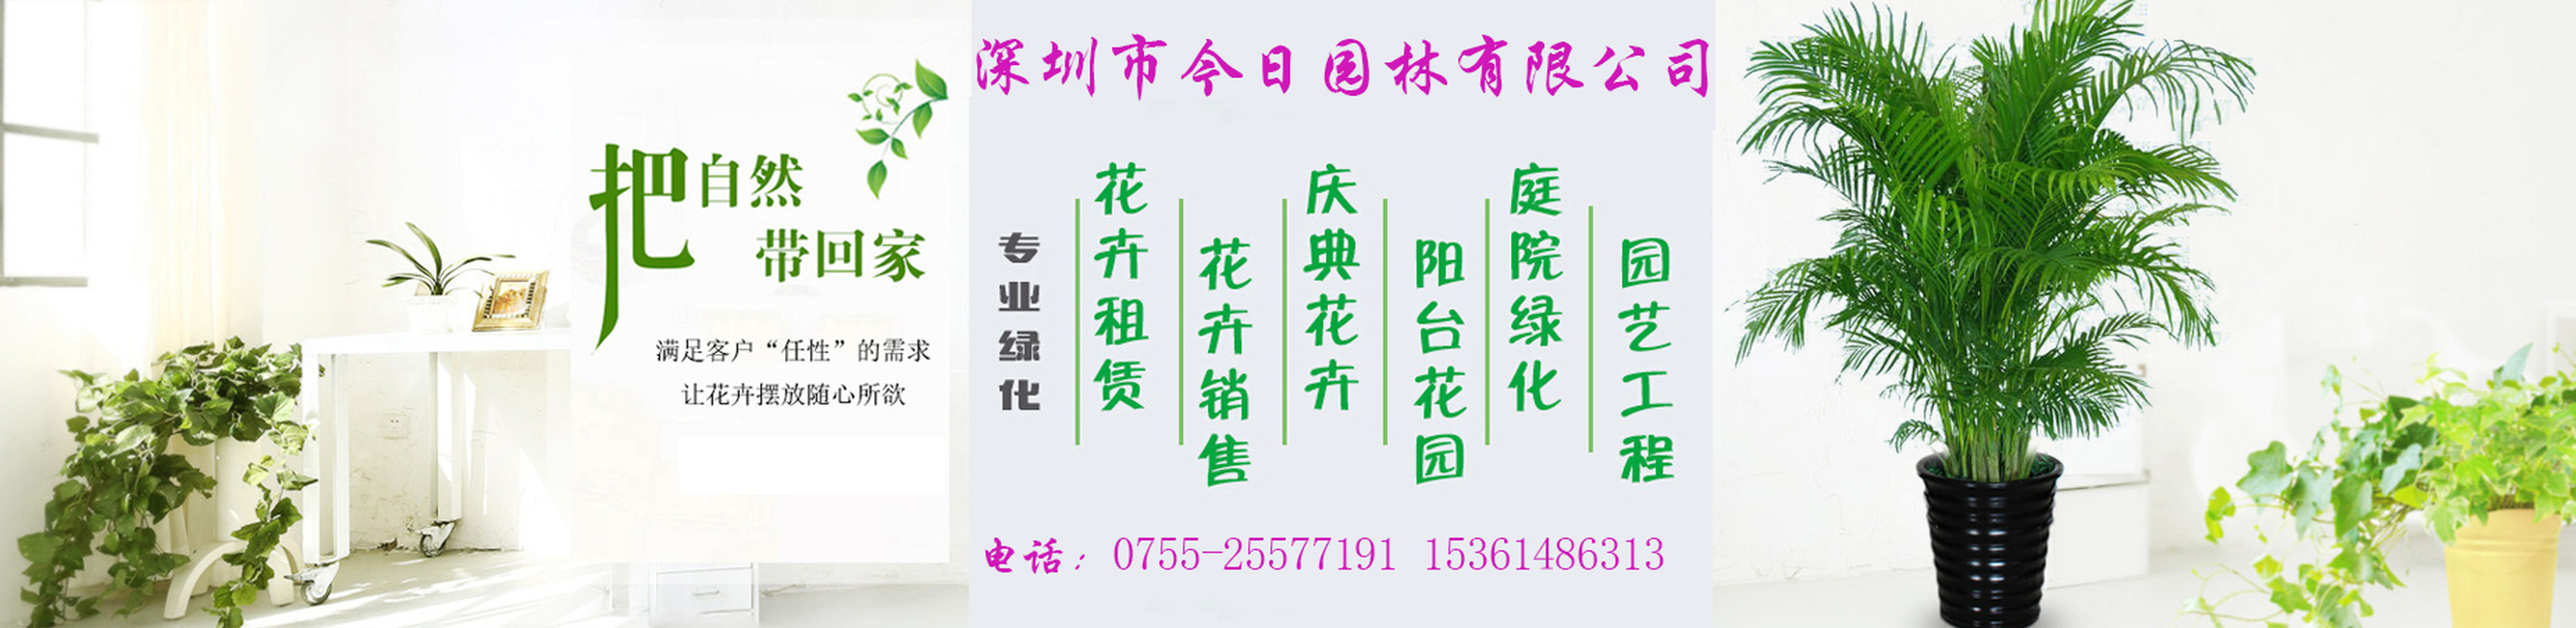 綠植租賃，找深圳市今日園林有限公司，電話：15361486313